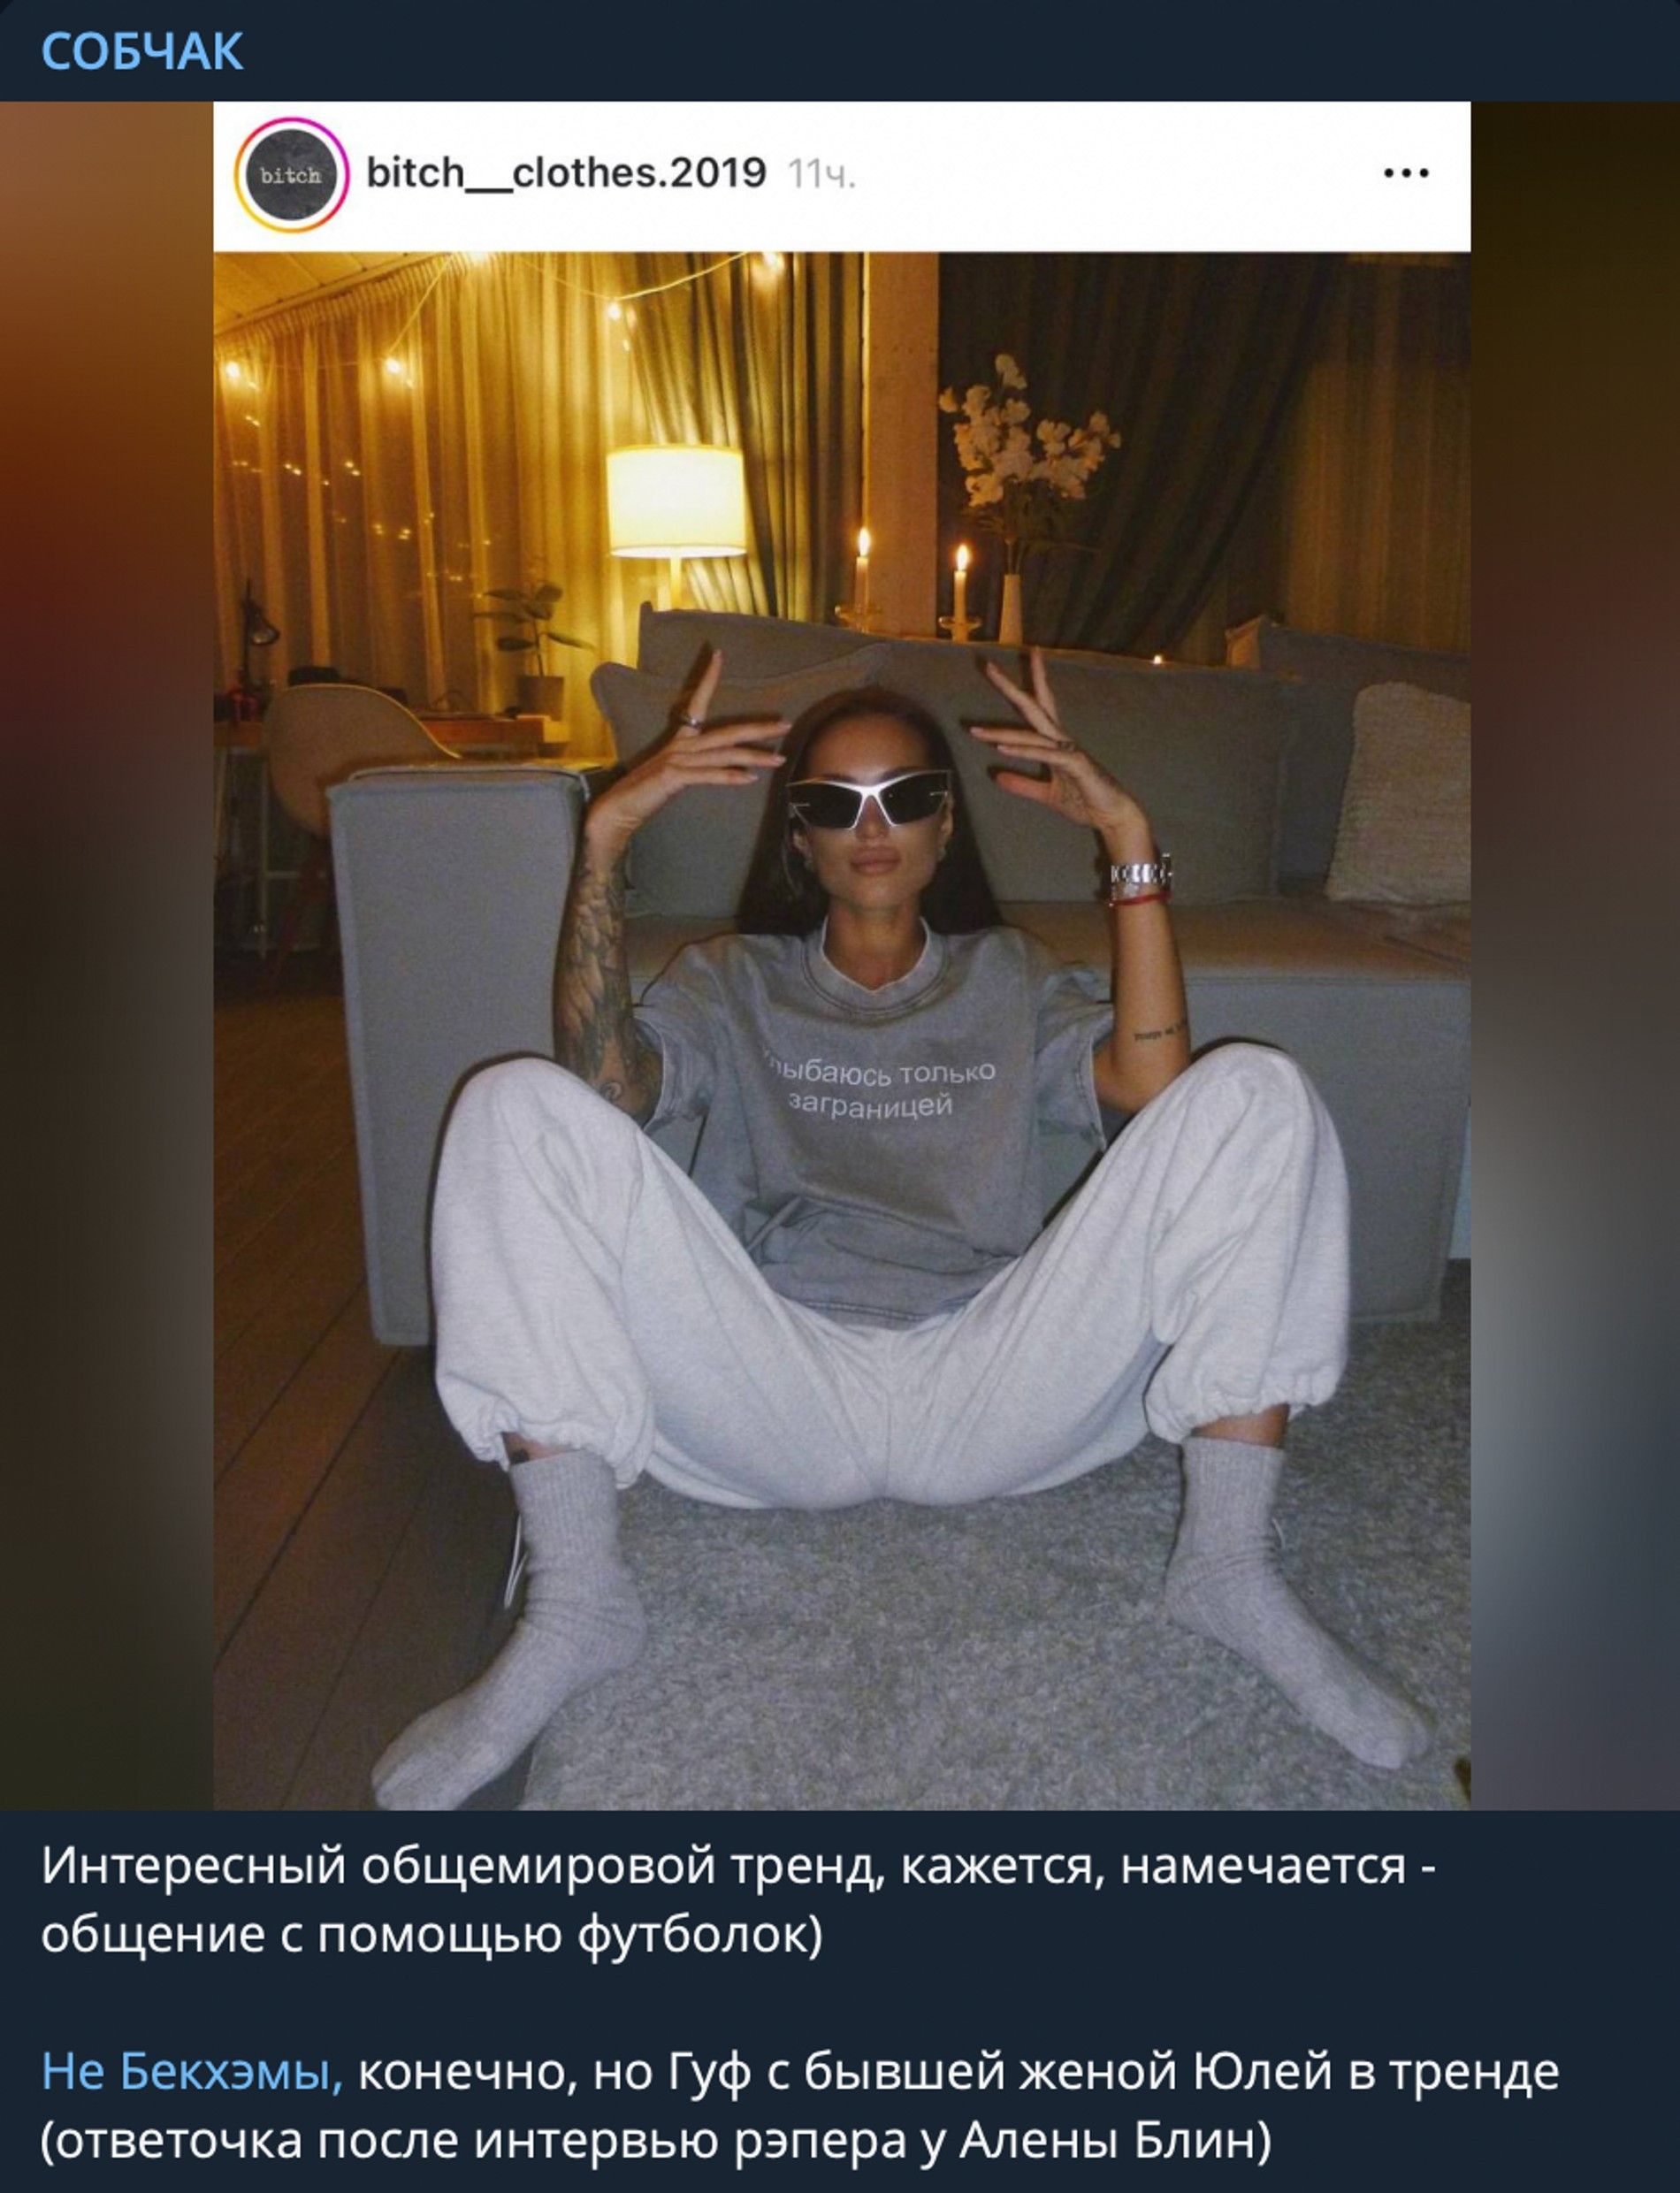 Фото: скрин поста в Telegram-канале «Собчак»